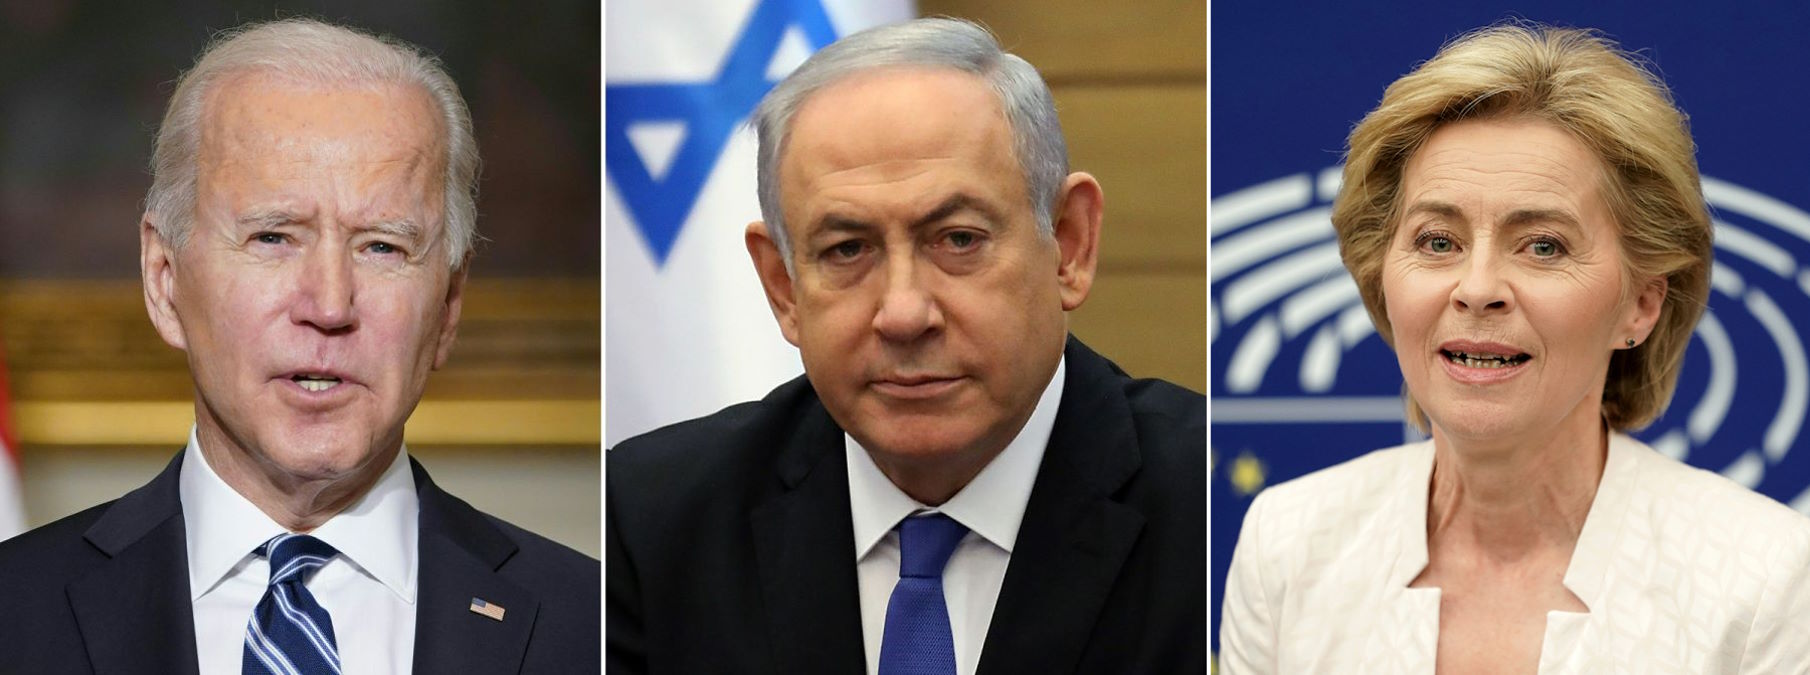 Israele, Usa e Europa vogliono far credere che Hamas sia peggio dell'Isis per giustificare il massacro di civili palestinesi a Gaza